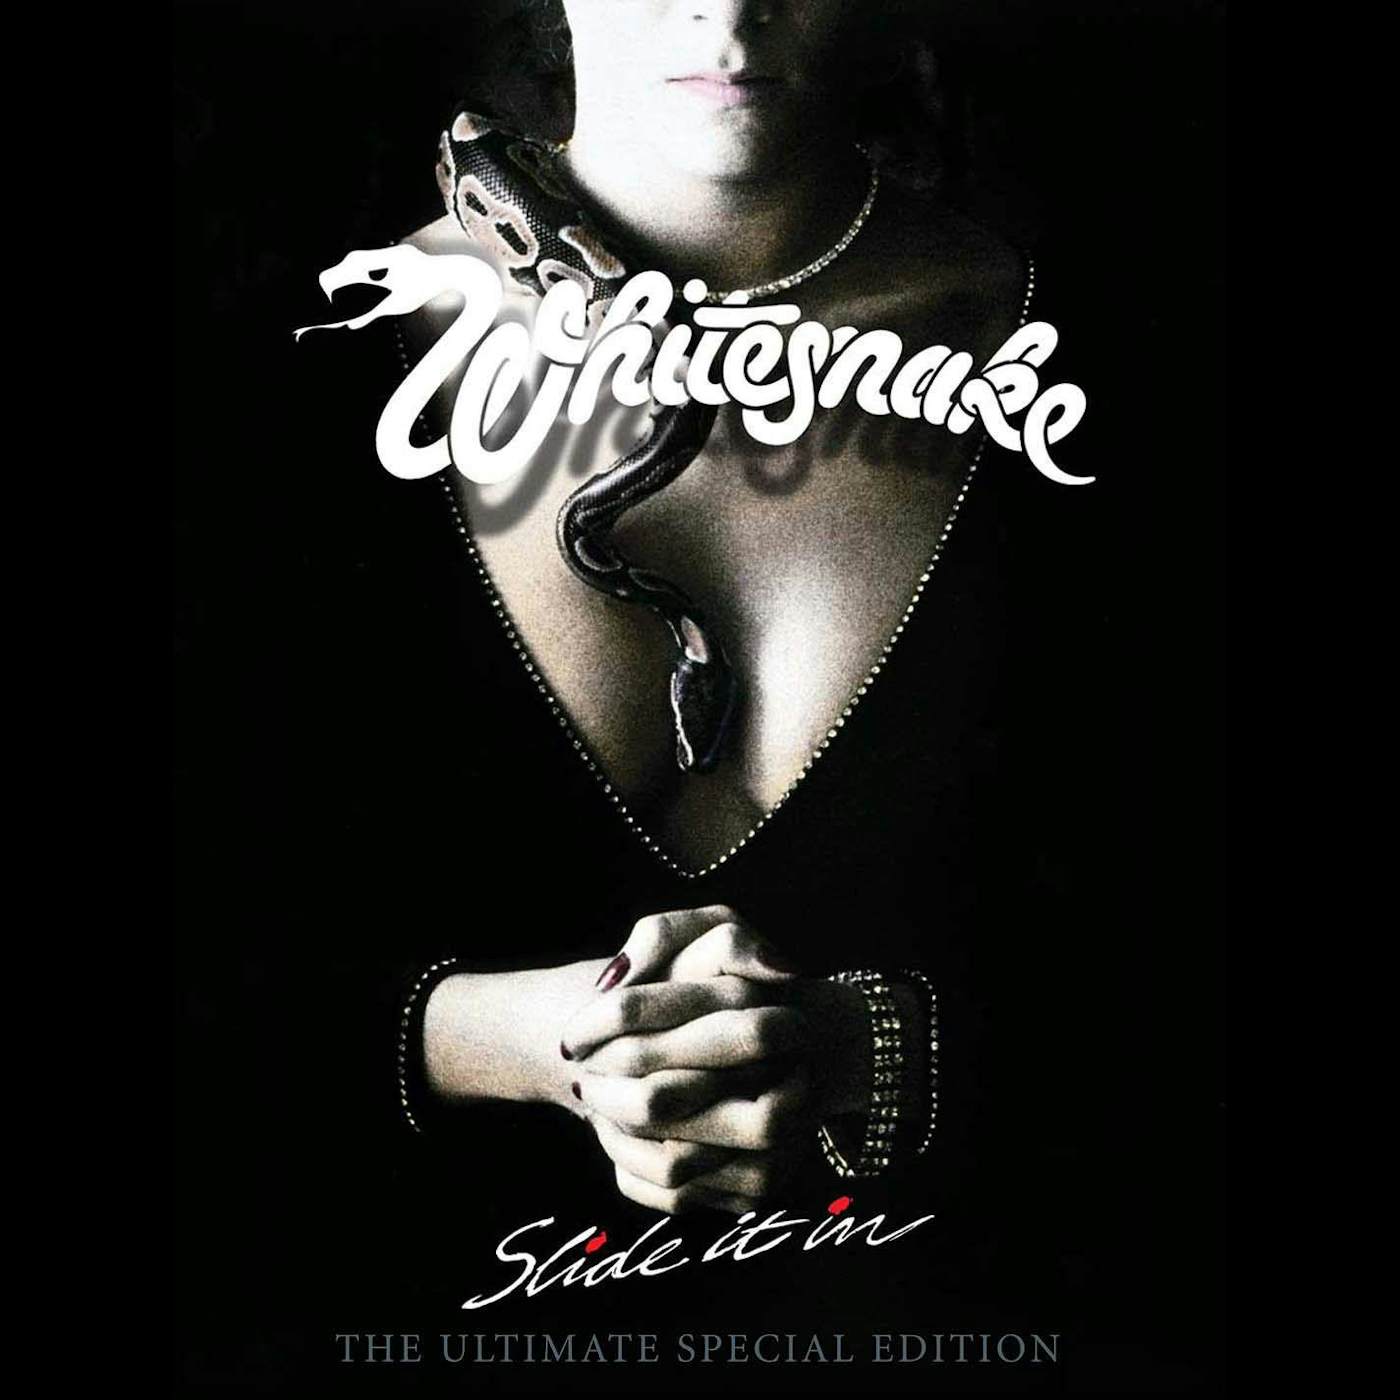 Whitesnake Slide It In: The Ultimate Edition (6CD/DVD Box Set)